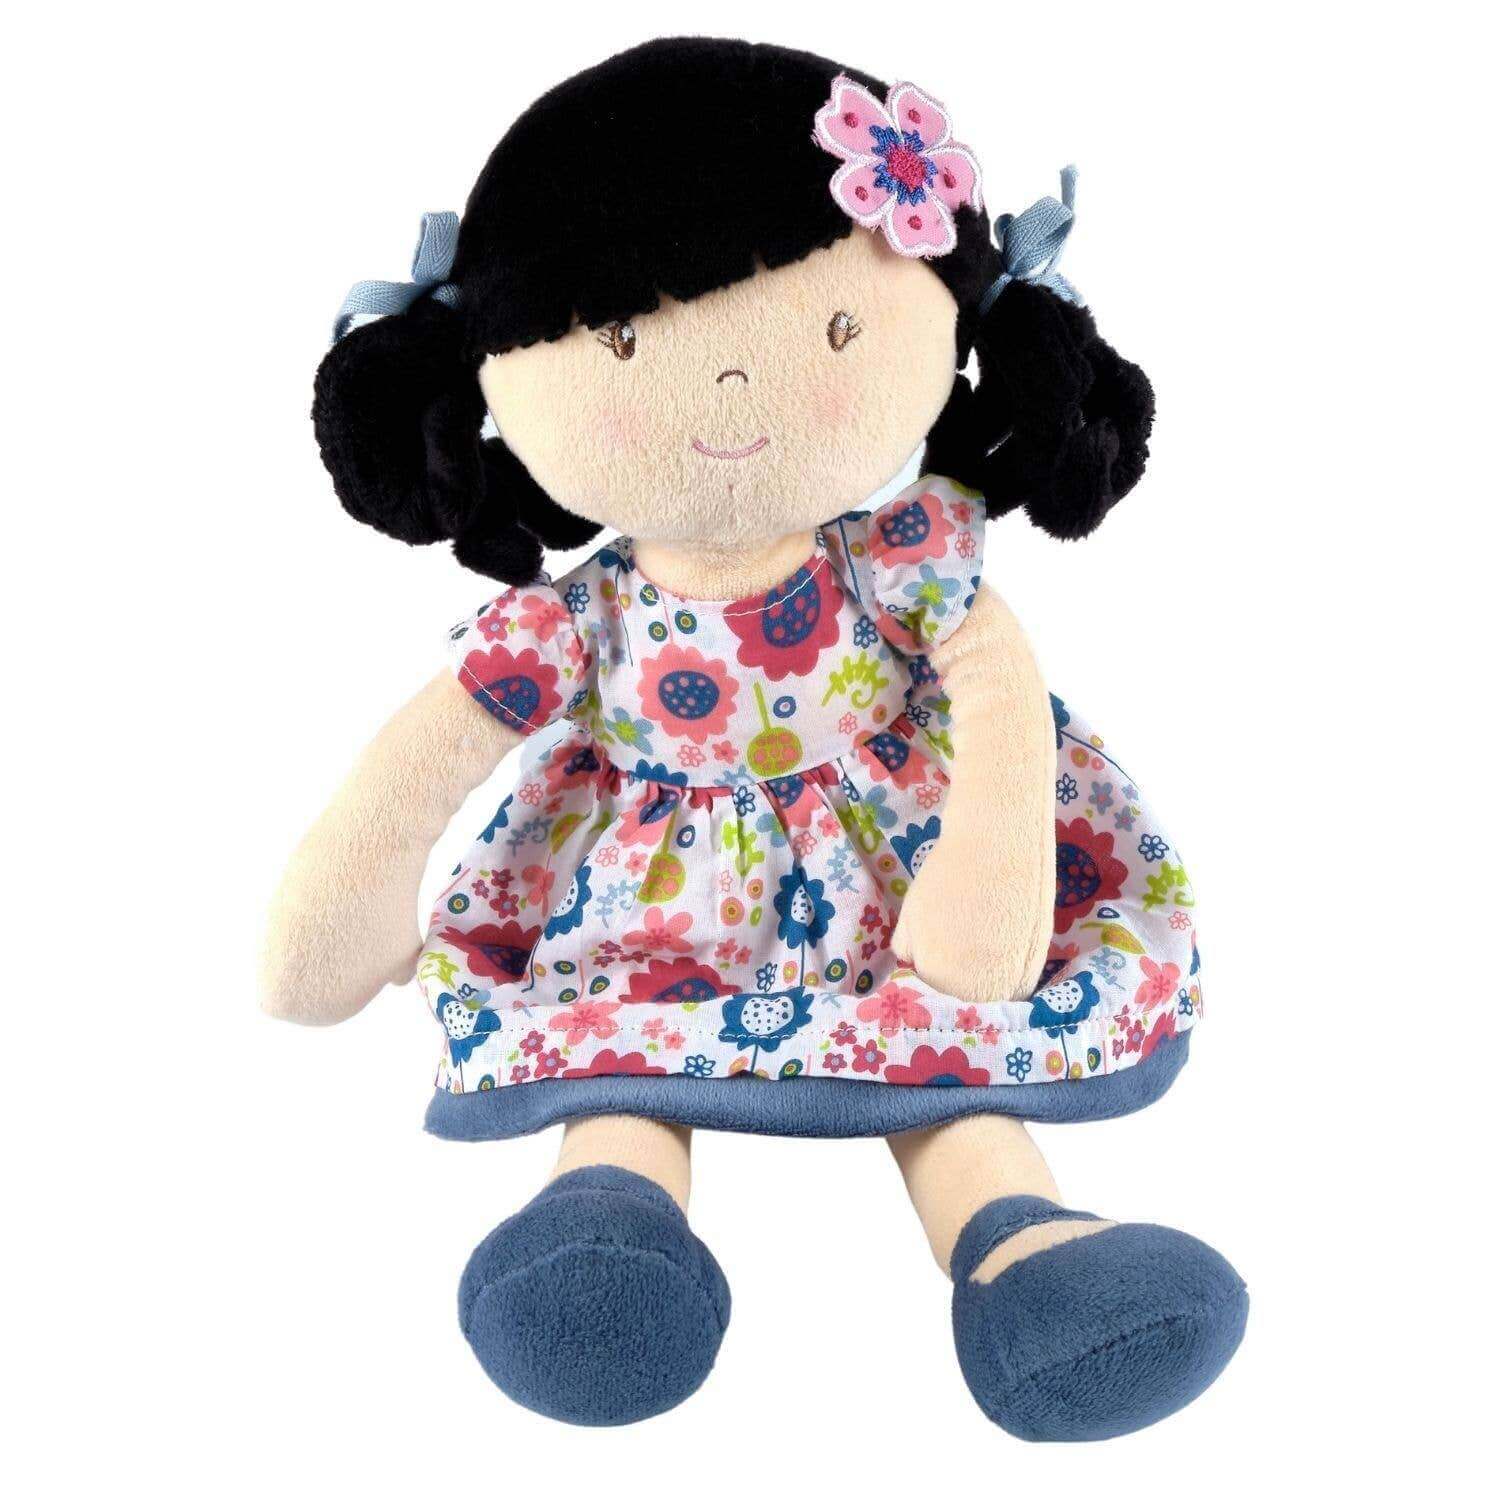 Lilac - Black Hair Doll, Tikiri Toys, eco-friendly Toys, Mountain Kids Toys